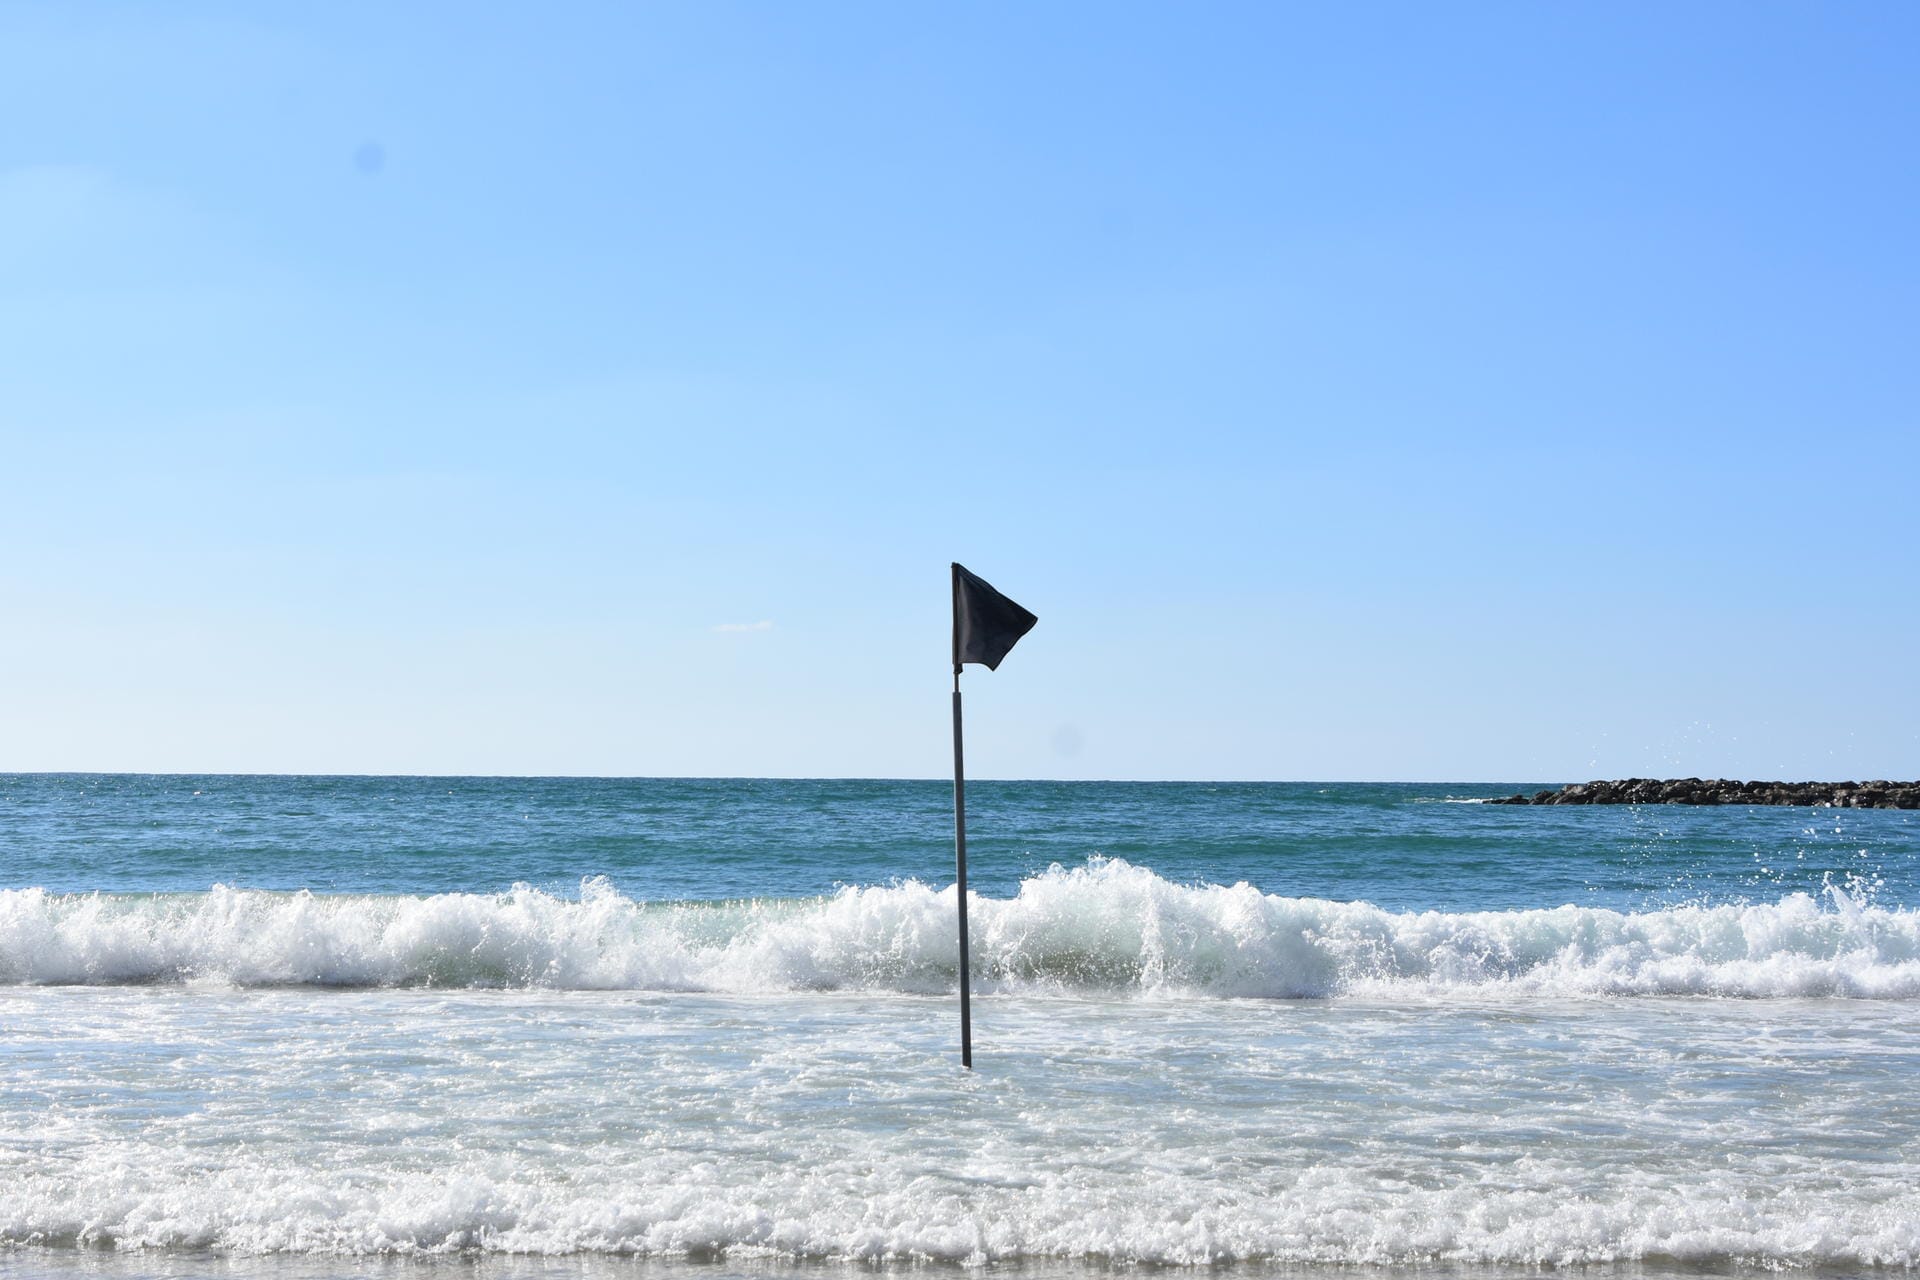 Schwarze Flagge: Auch die schwarze Flagge ist nicht Teil des internationalen Systems, wird aber mancherorts genutzt, um Gefahr zu signalisieren. Weht also eine schwarze Flagge am Strand, sollten sie zunächst dem Wasser fortbleiben und sich weiter informieren.